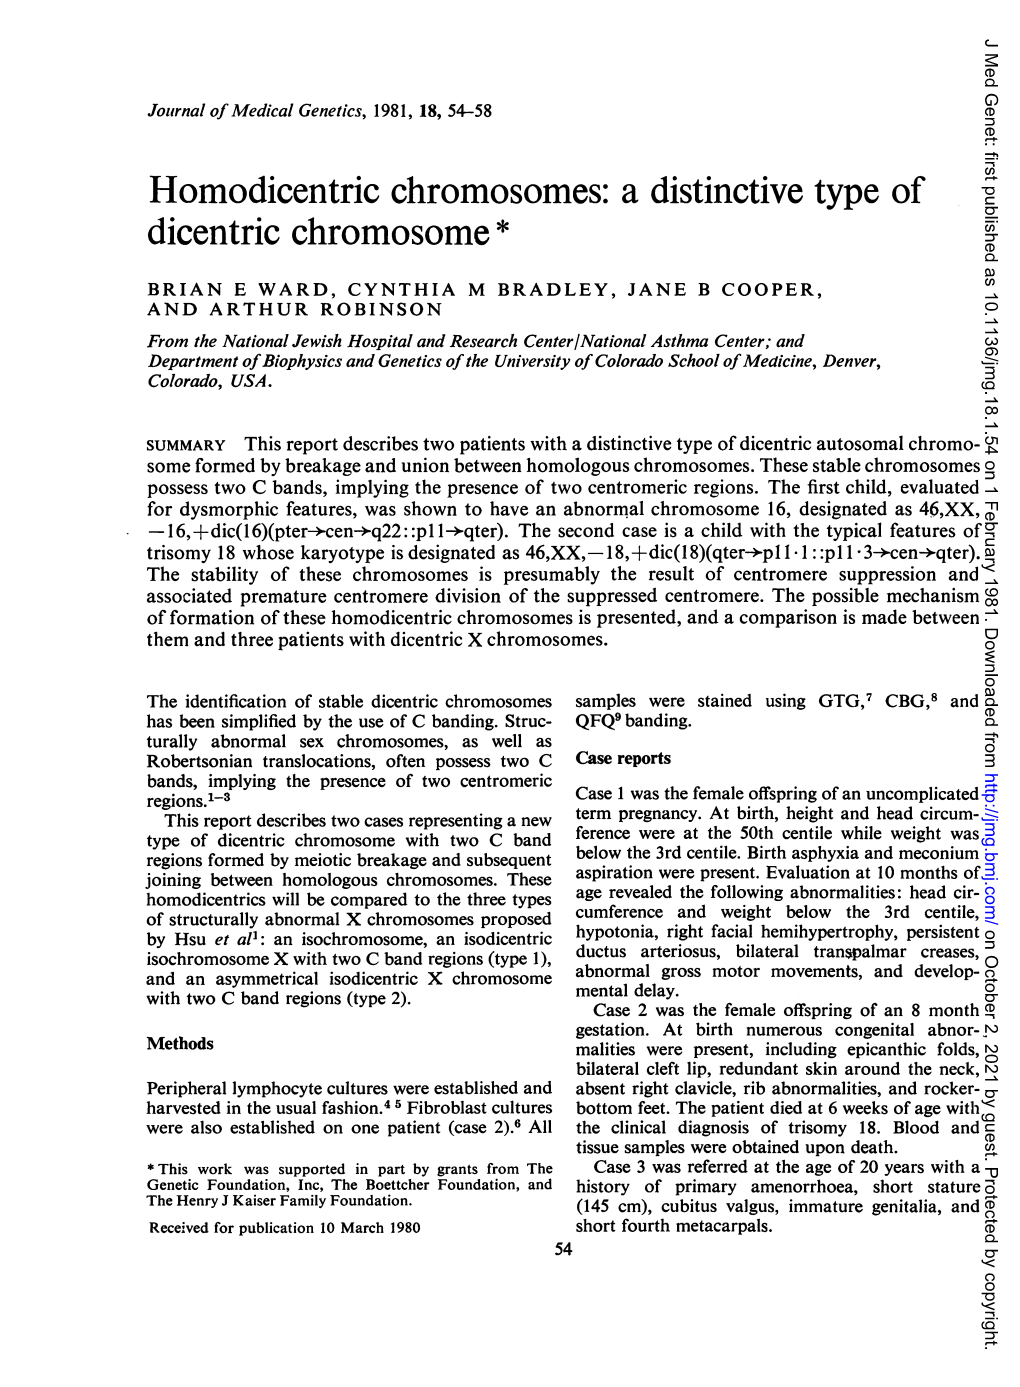 Homodicentric Chromosomes: a Distinctive Type of Dicentric Chromosome*